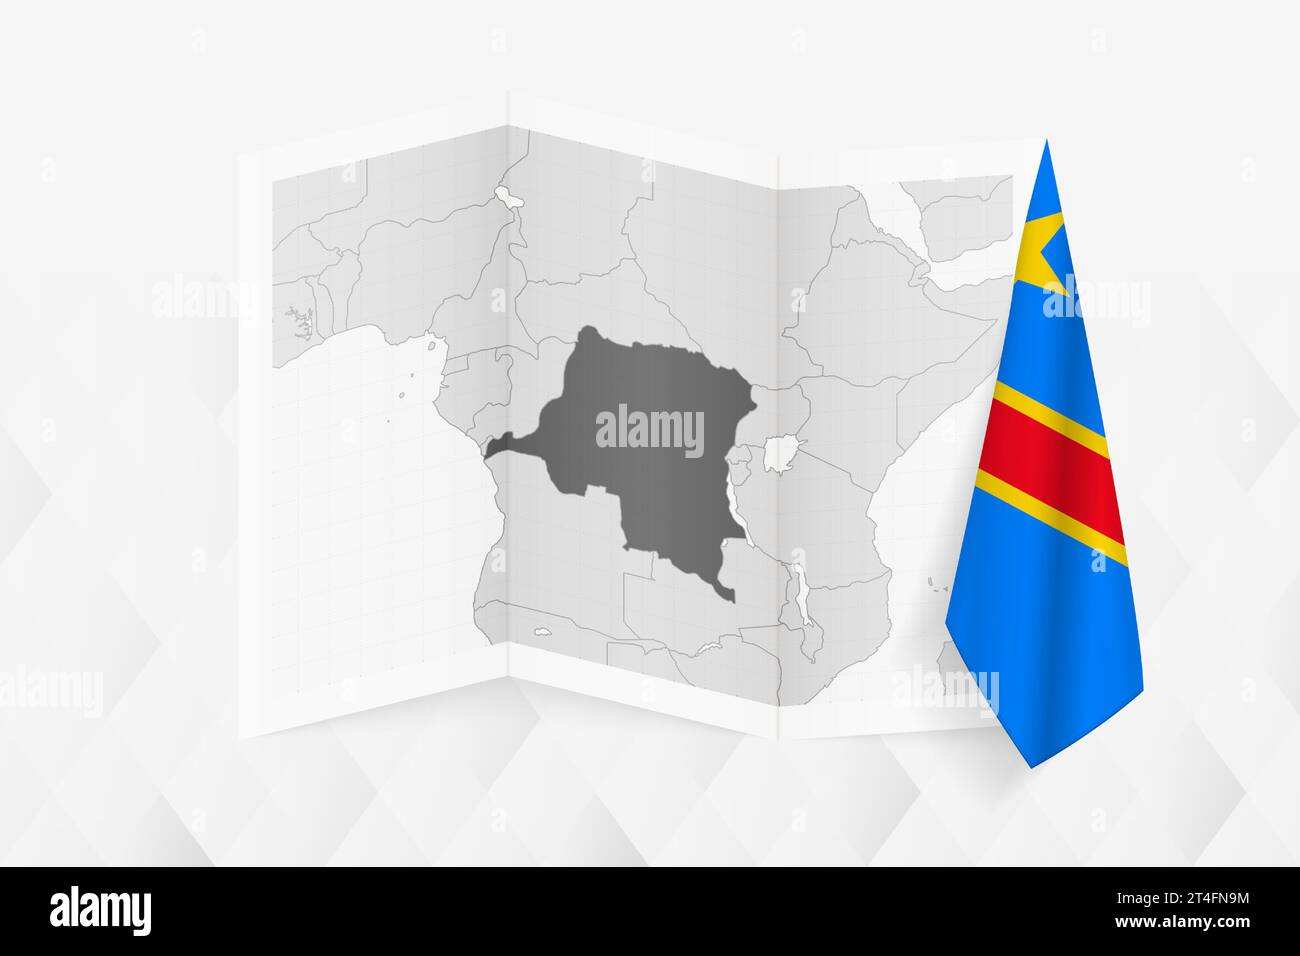 Une carte en niveaux de gris de la RD Congo avec un drapeau congolais suspendu sur un côté. Carte vectorielle pour de nombreux types de nouvelles. Illustration vectorielle. Illustration de Vecteur